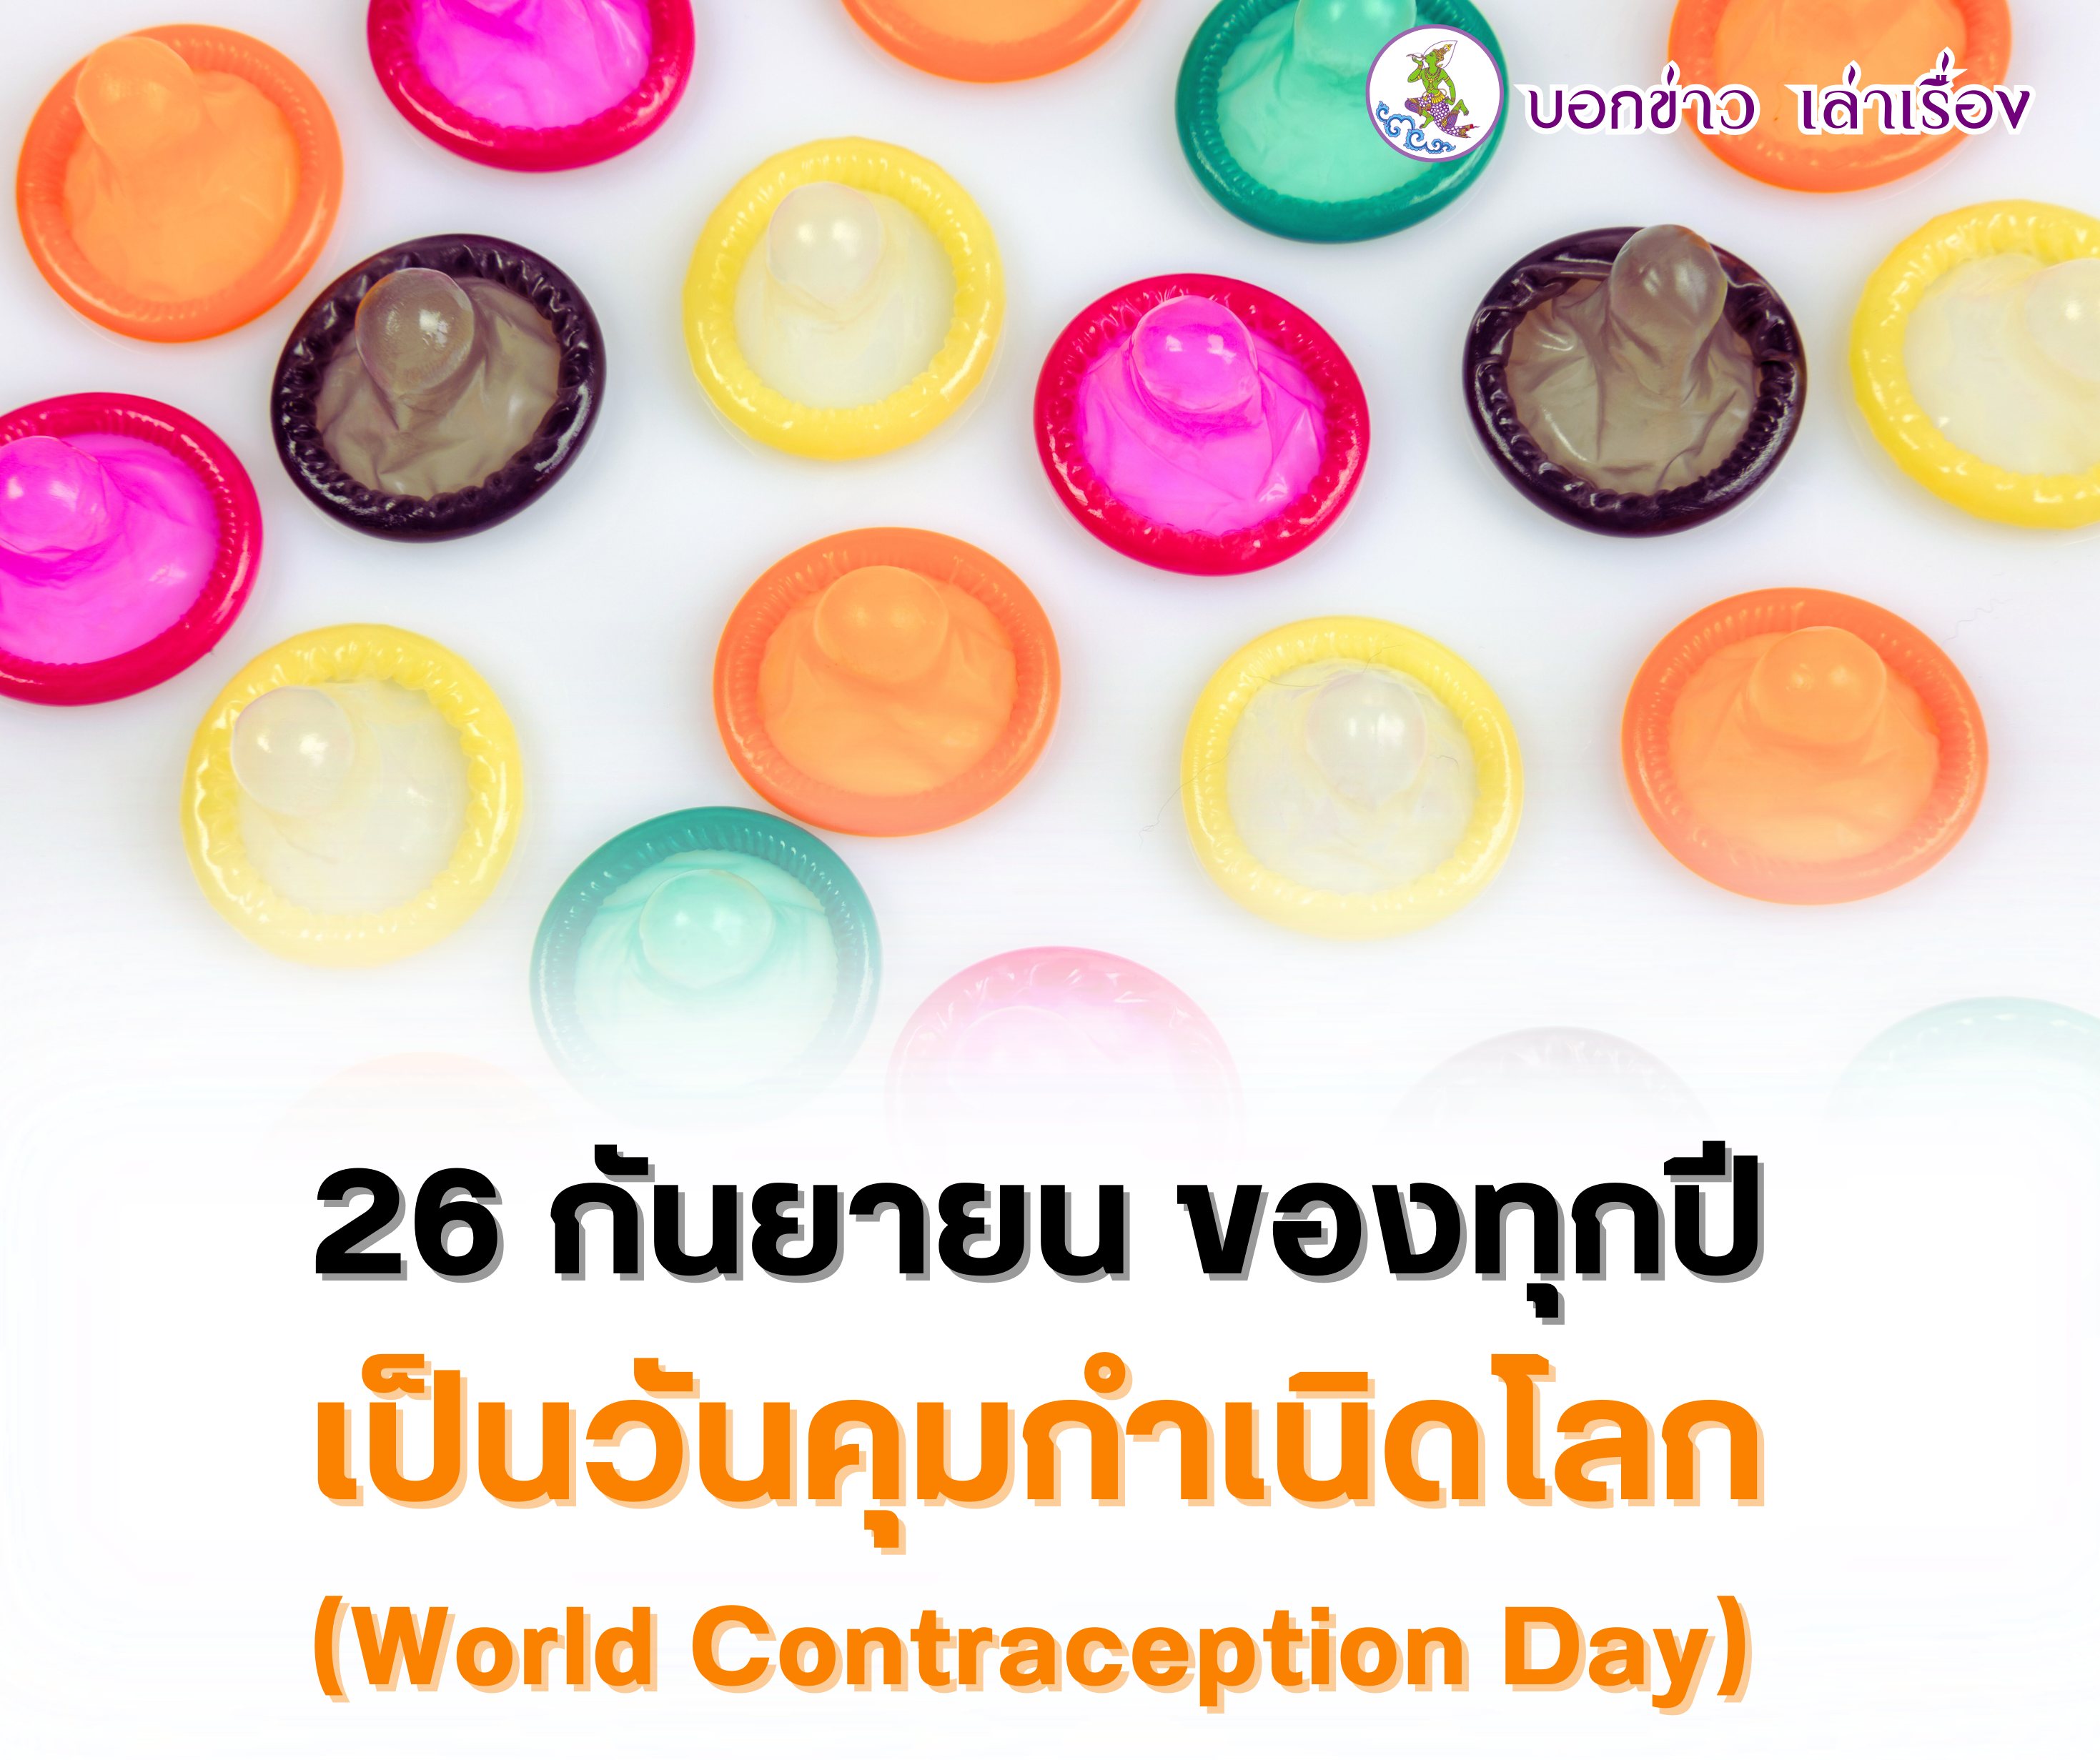 26 กันยายน ของทุกปี เป็นวันคุมกำเนิดโลก (World Contraception Day)